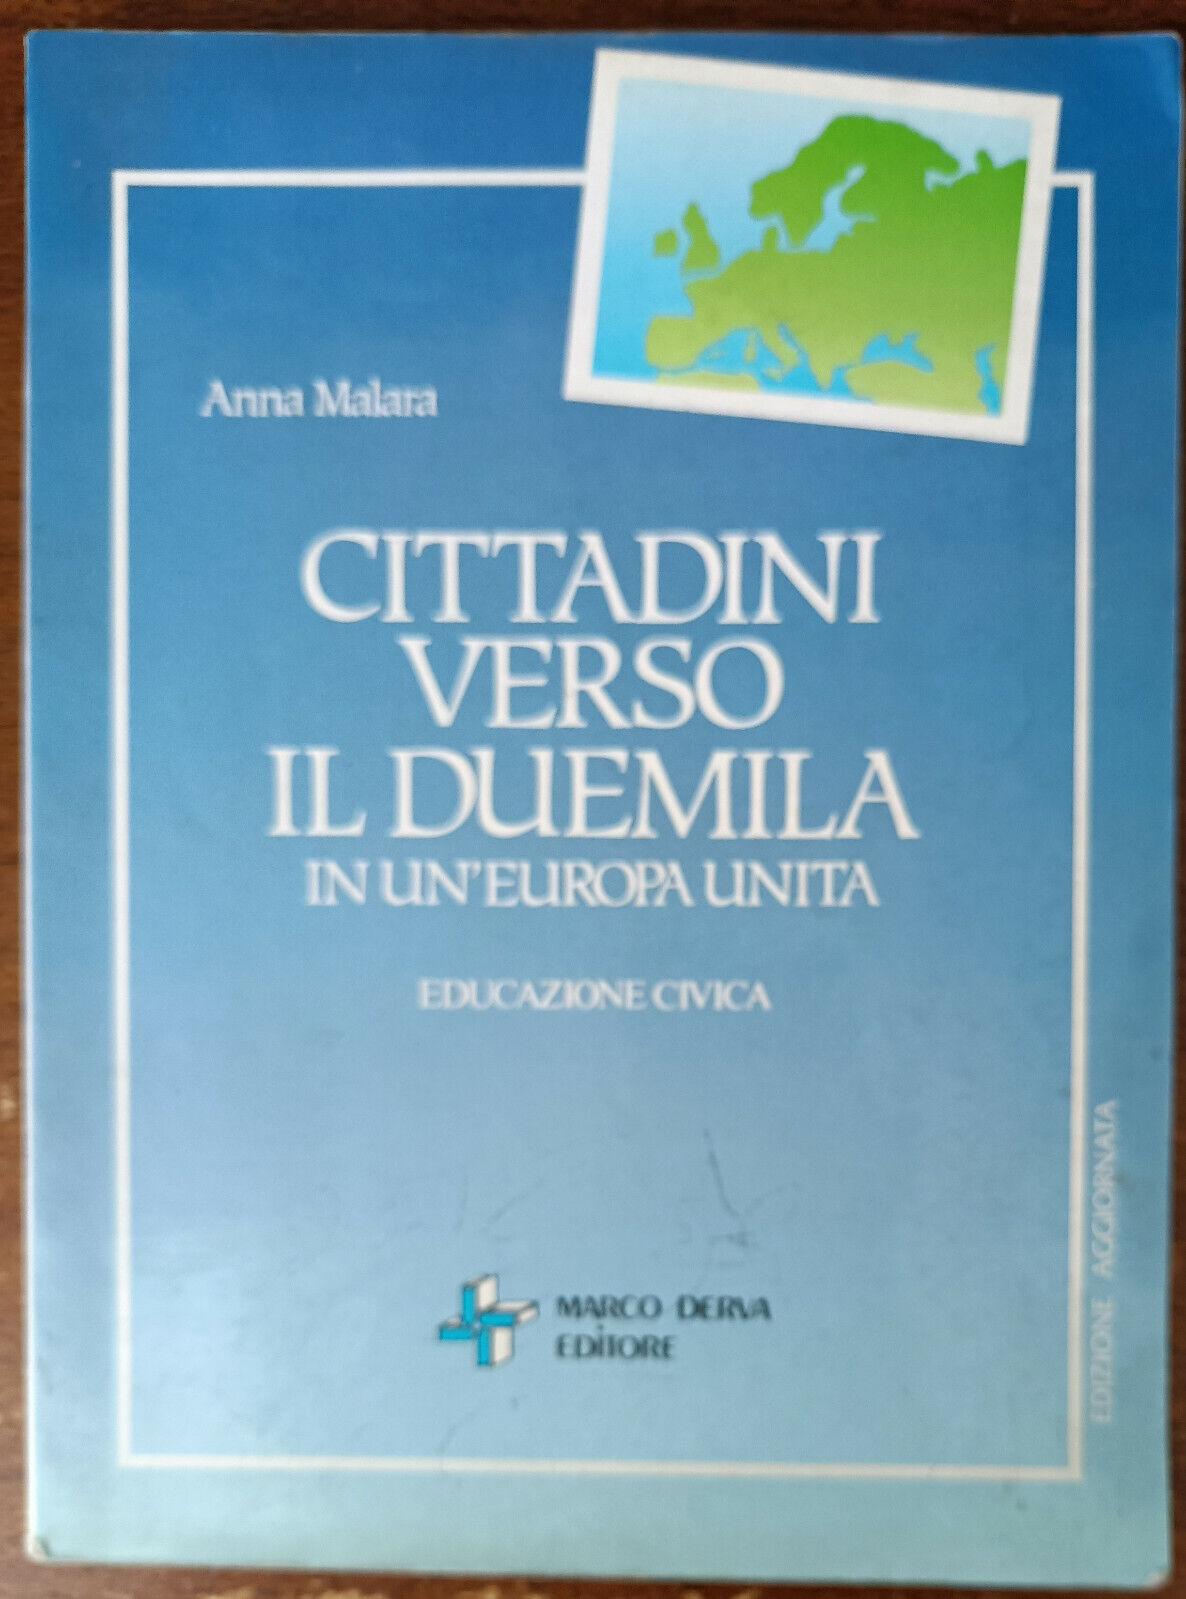 Cittadini verso il duemila - Anna Malara - Marco Derva, 1991 - A